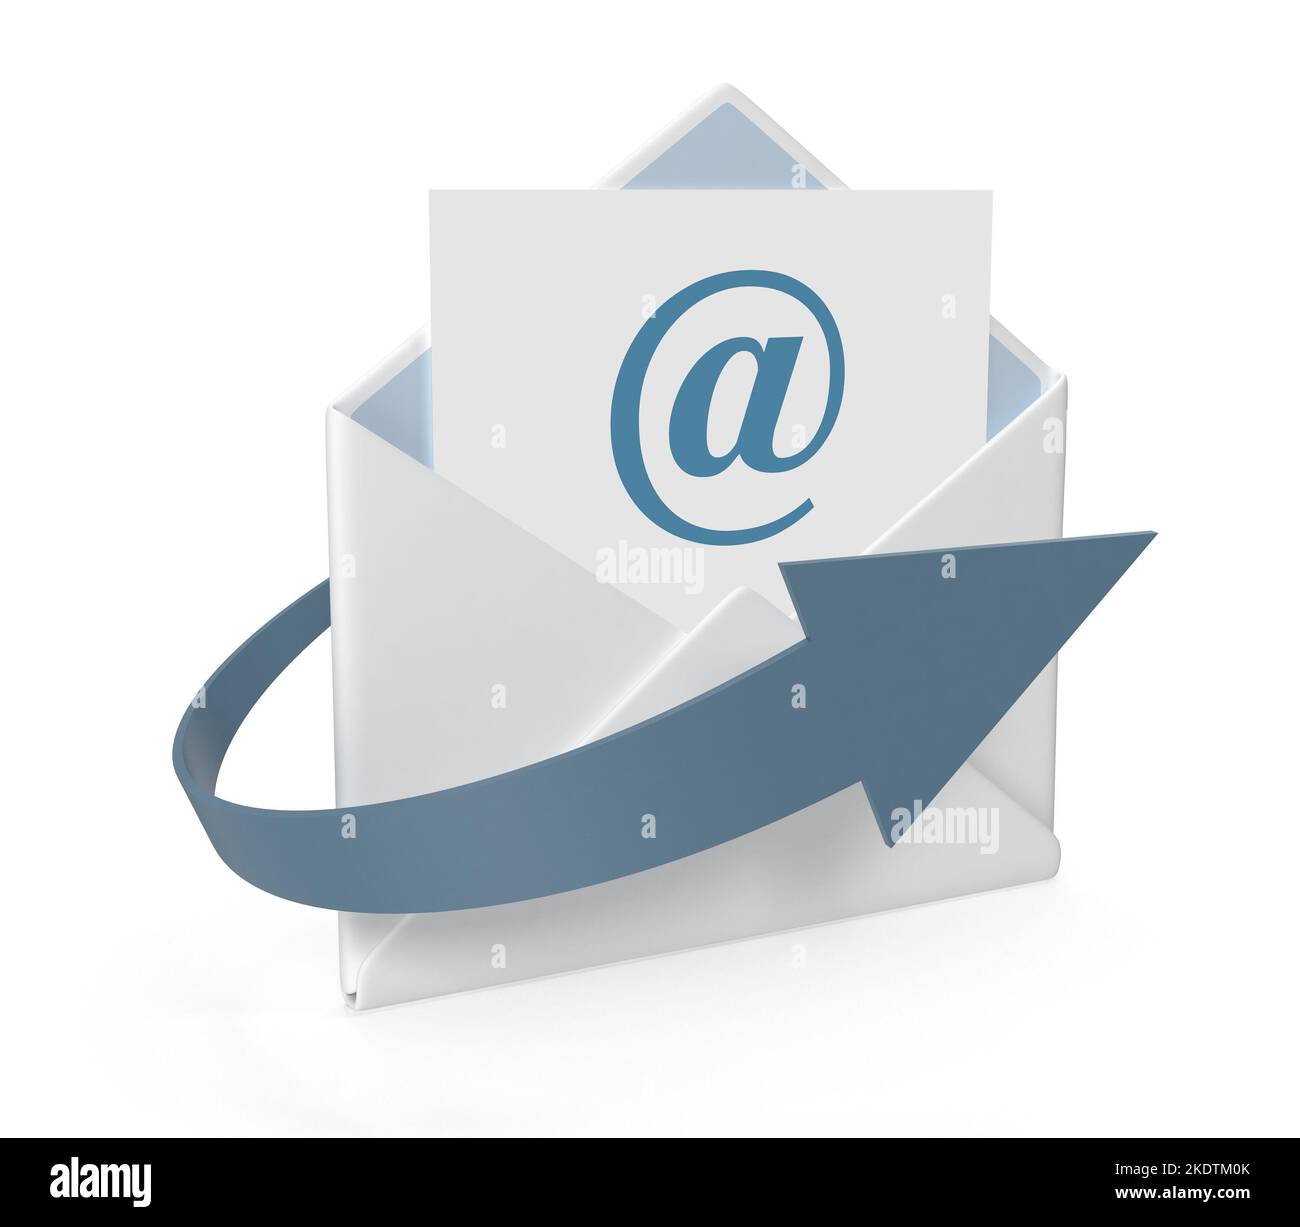 Concept d'e-mail avec enveloppe et flèche , il s'agit d'une image générée par ordinateur en 3D. Isolé sur blanc. Banque D'Images